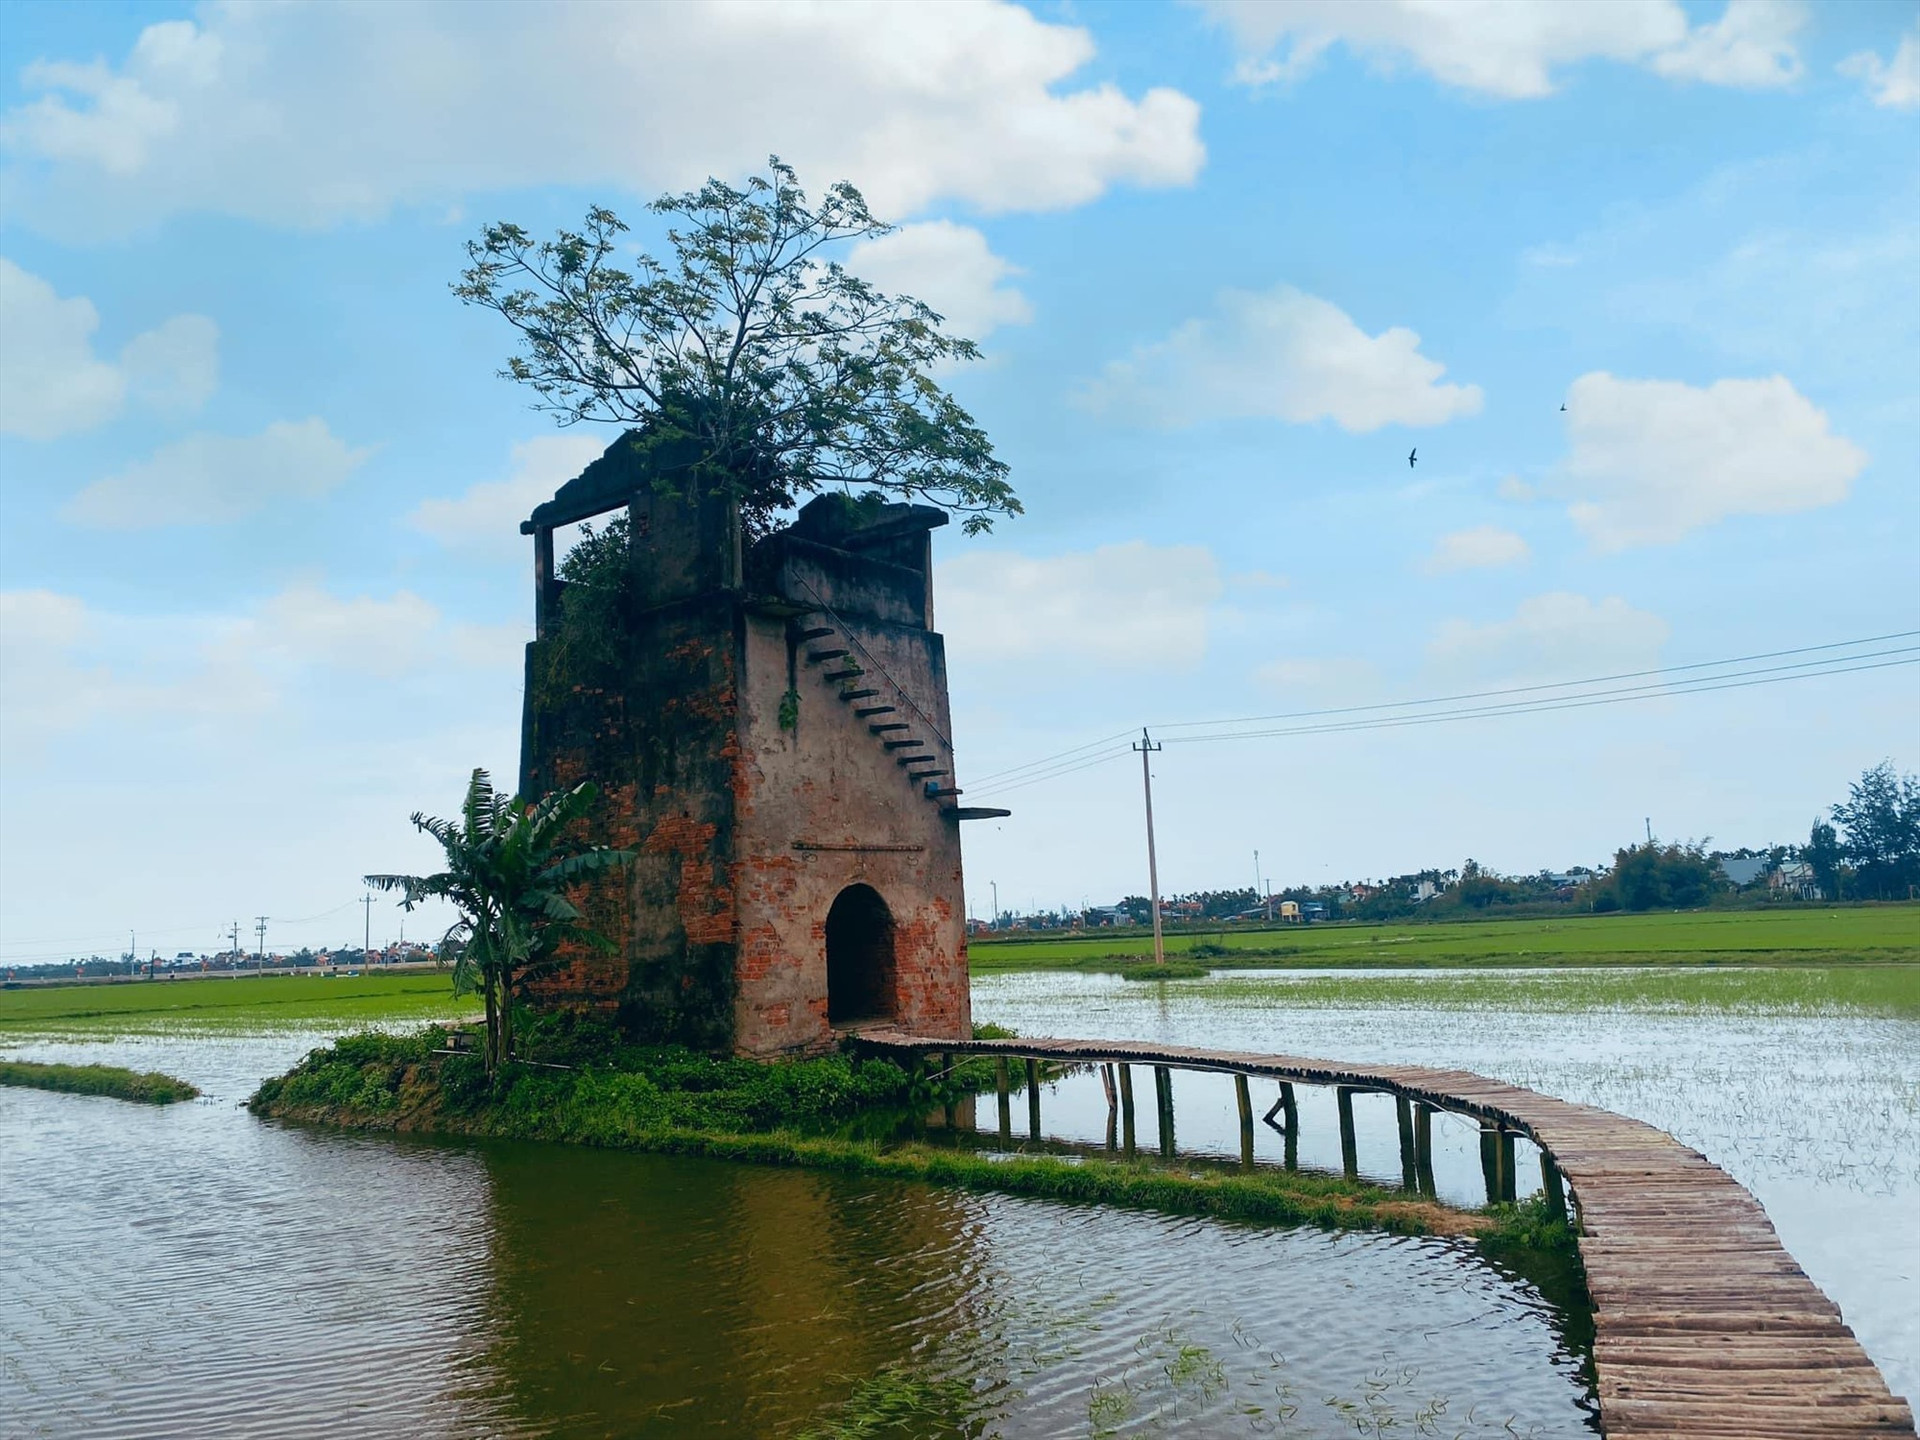 Lò gạch cũ ở Duy Xuyên, Quảng Nam. Ảnh: Tiểu Vũ